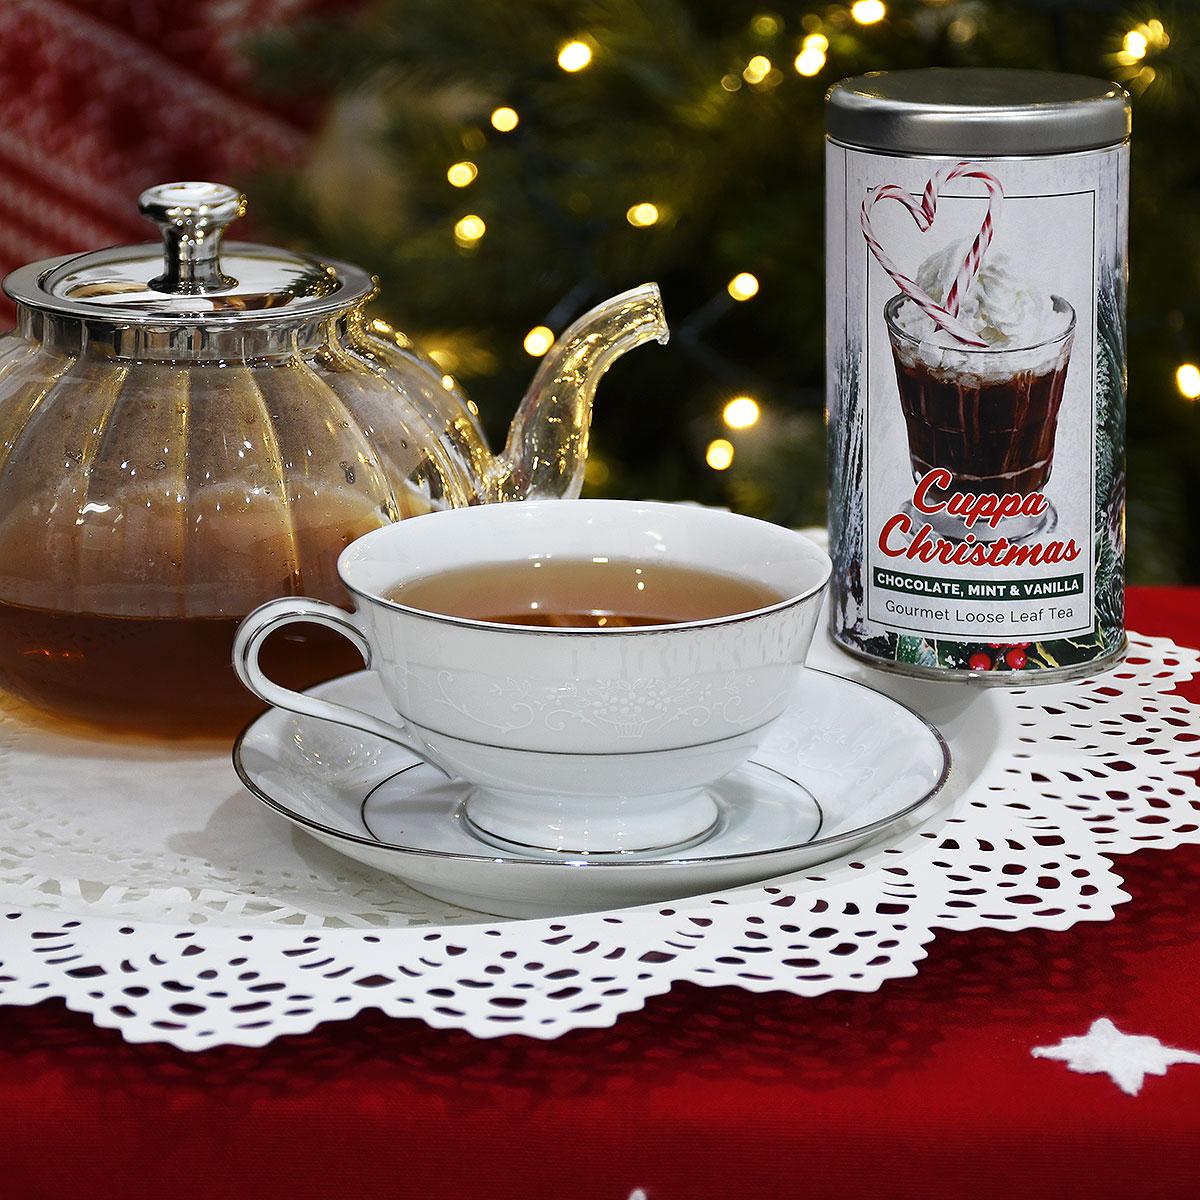 Cuppa Christmas Tea